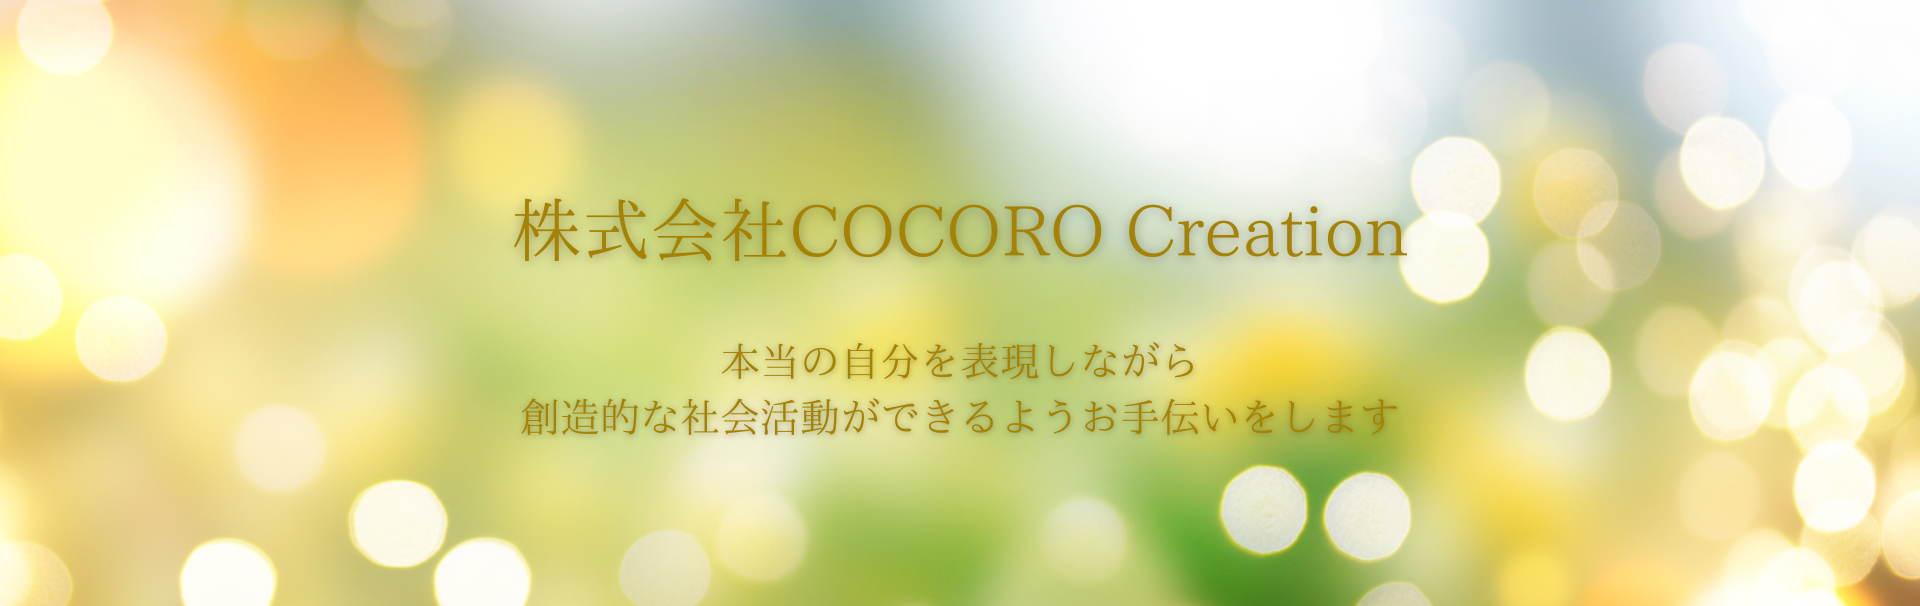 COCORO Creation